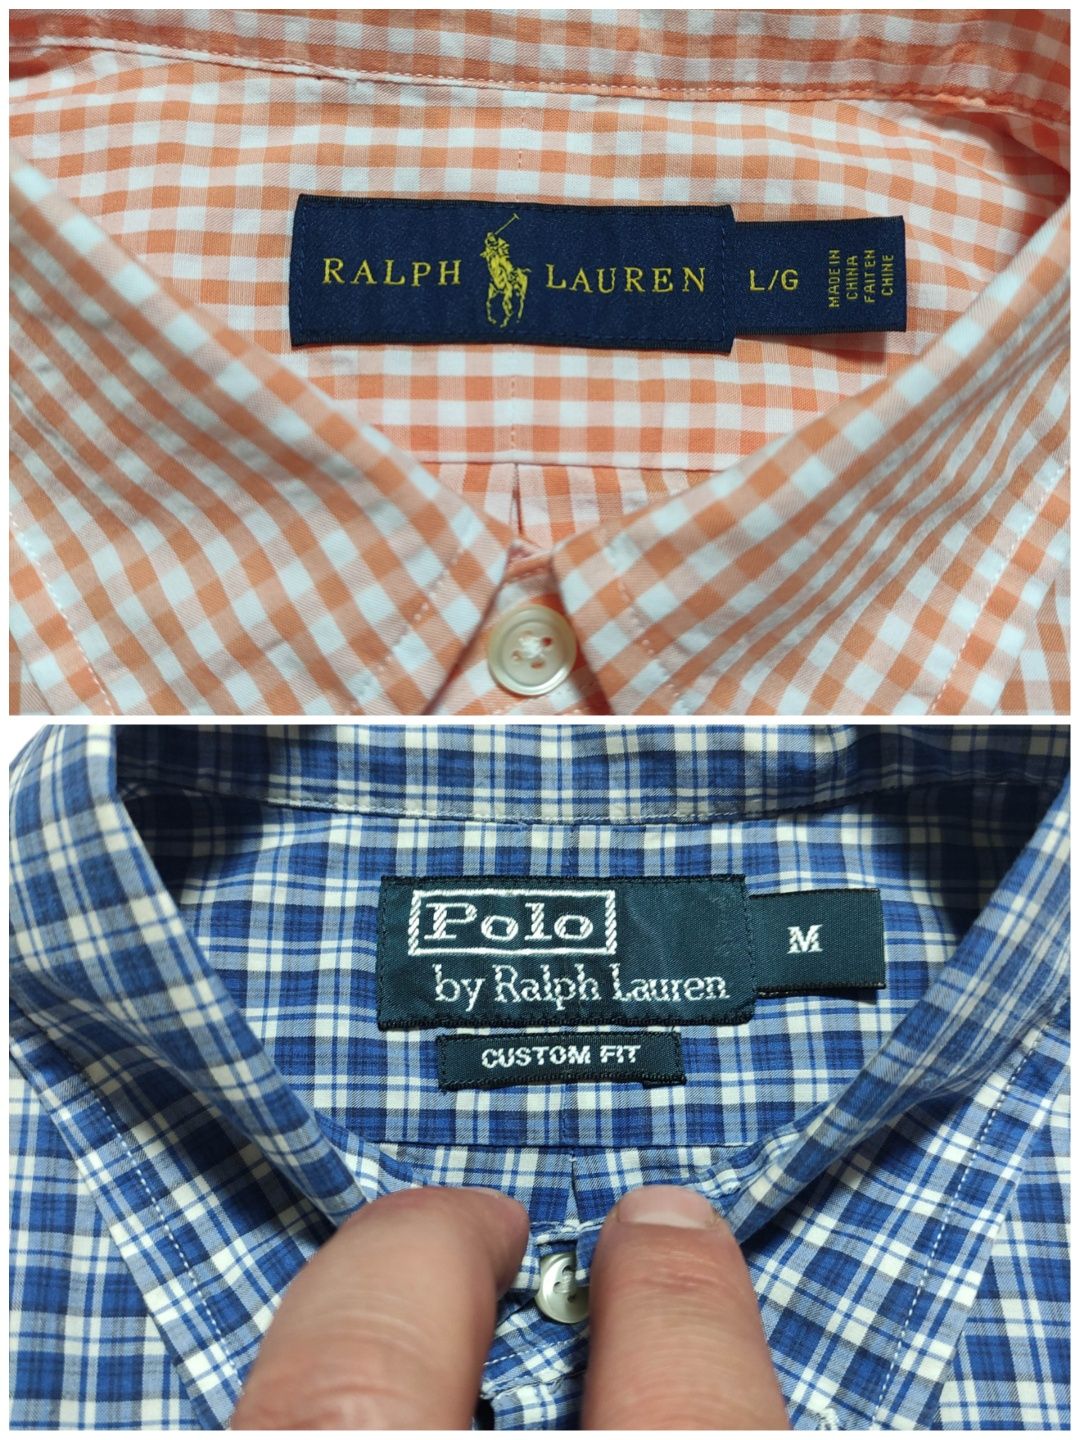 Рубашка Polo Ralph Lauren originals оригинал size M, L